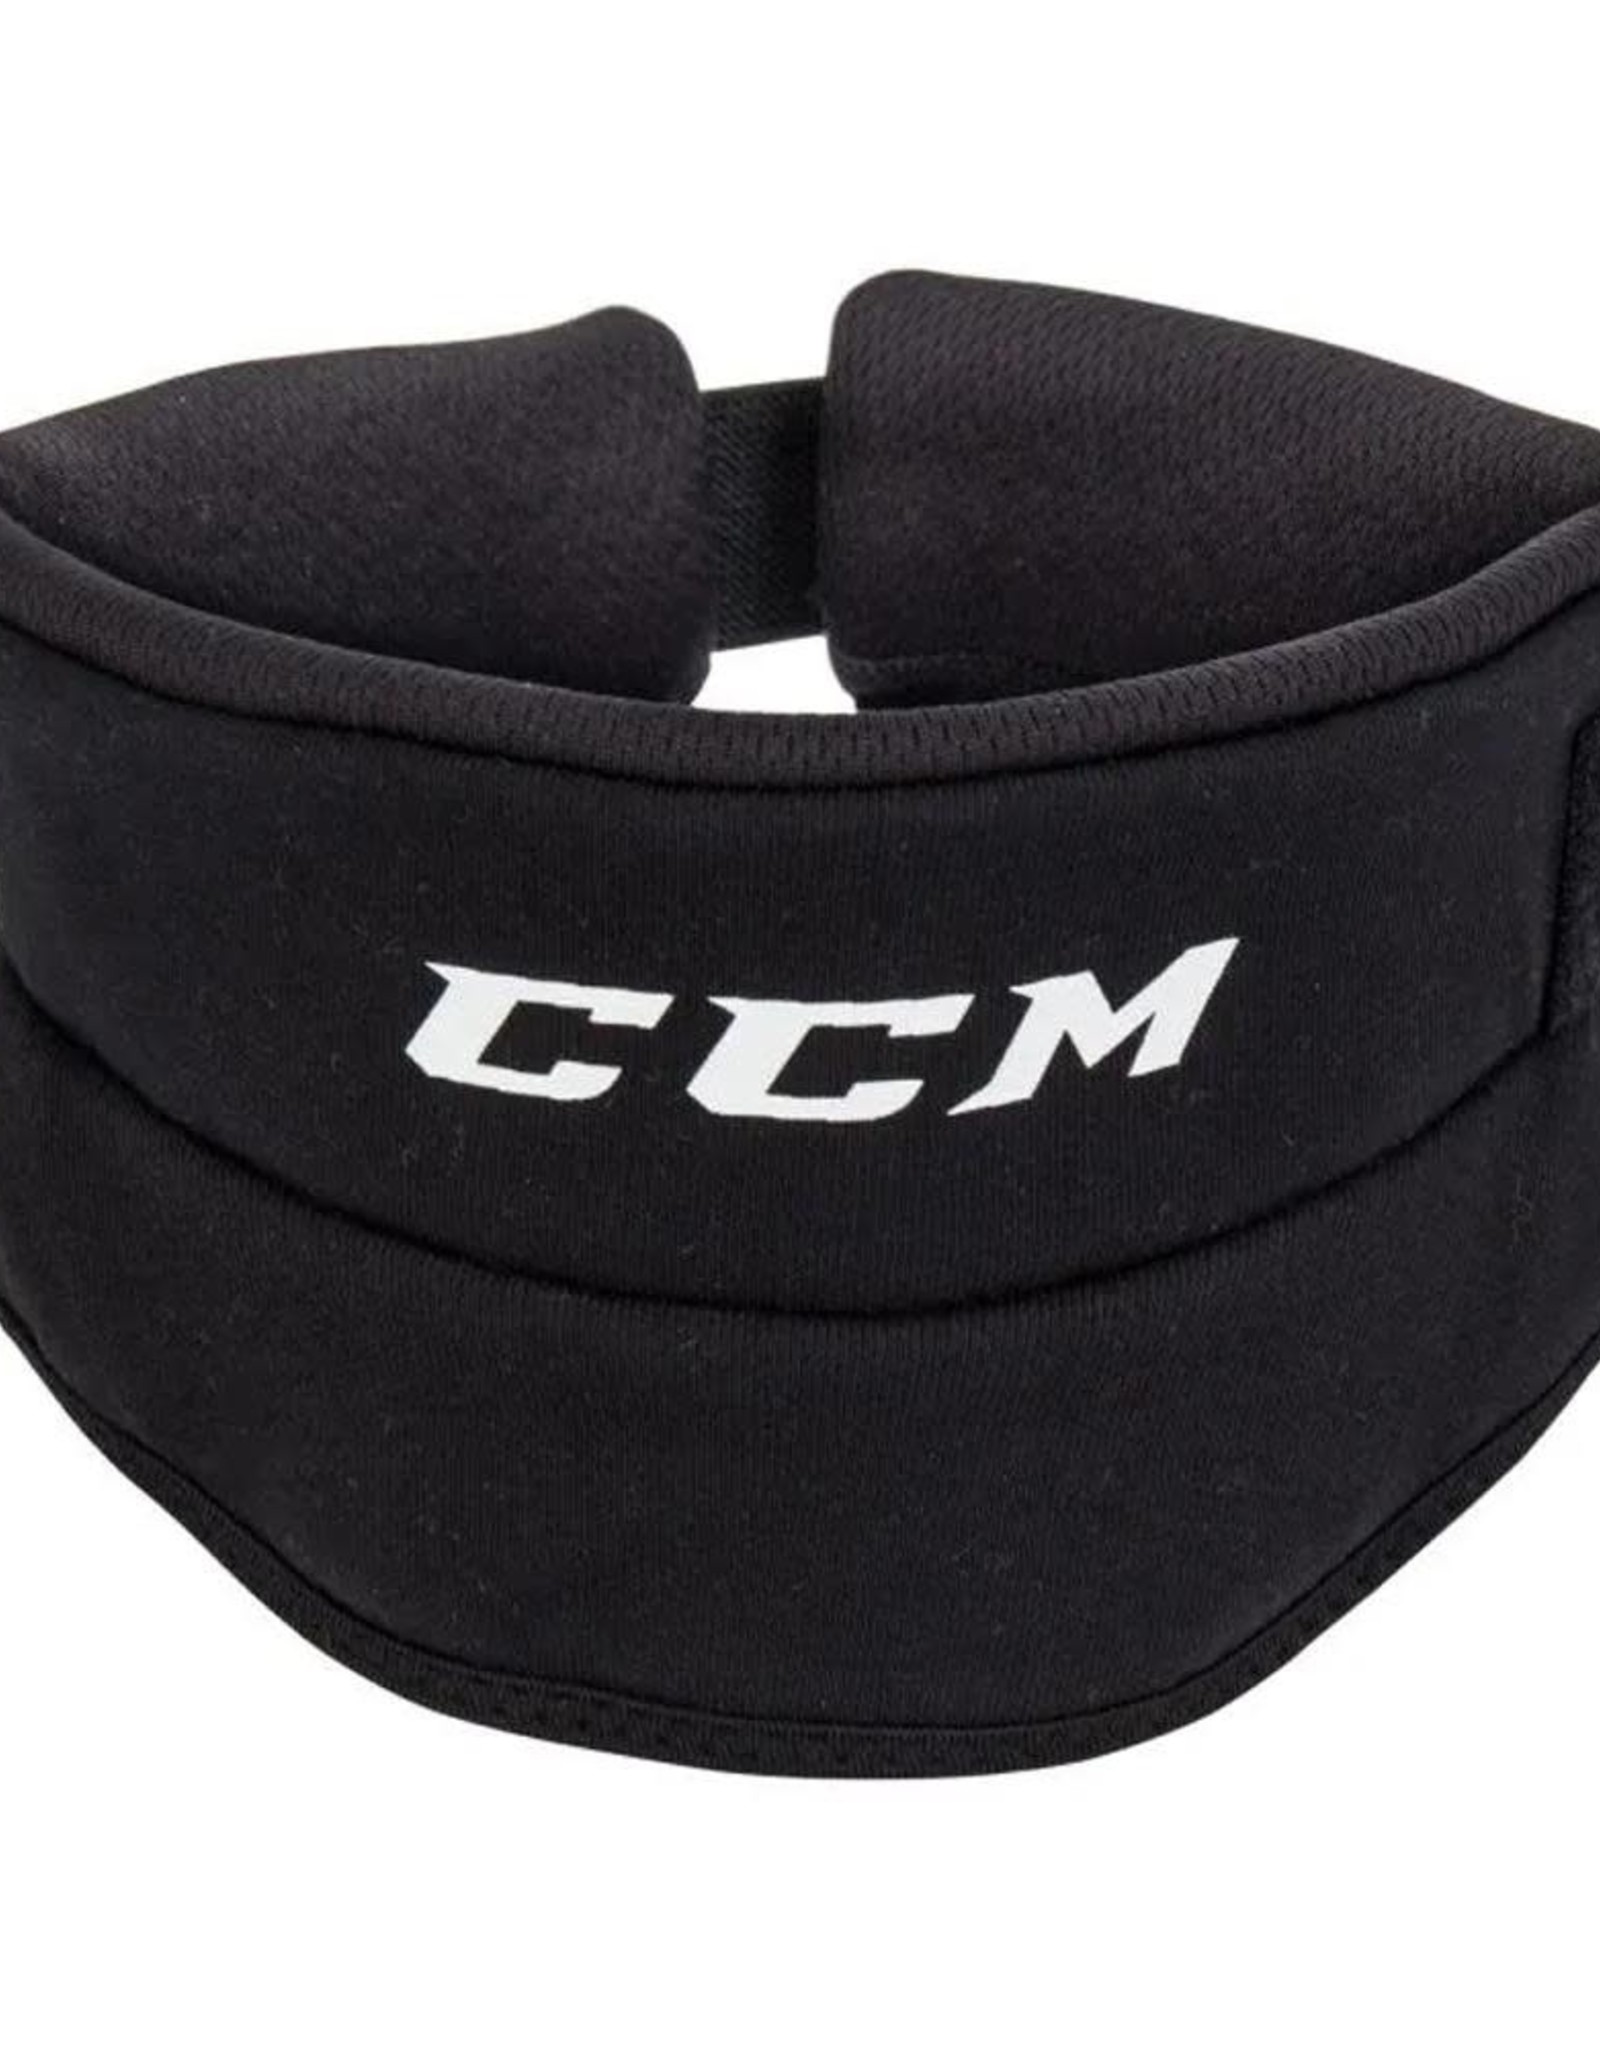 CCM Hockey NECK GUARD 900 SR CUT RESISTANT Black OSFA